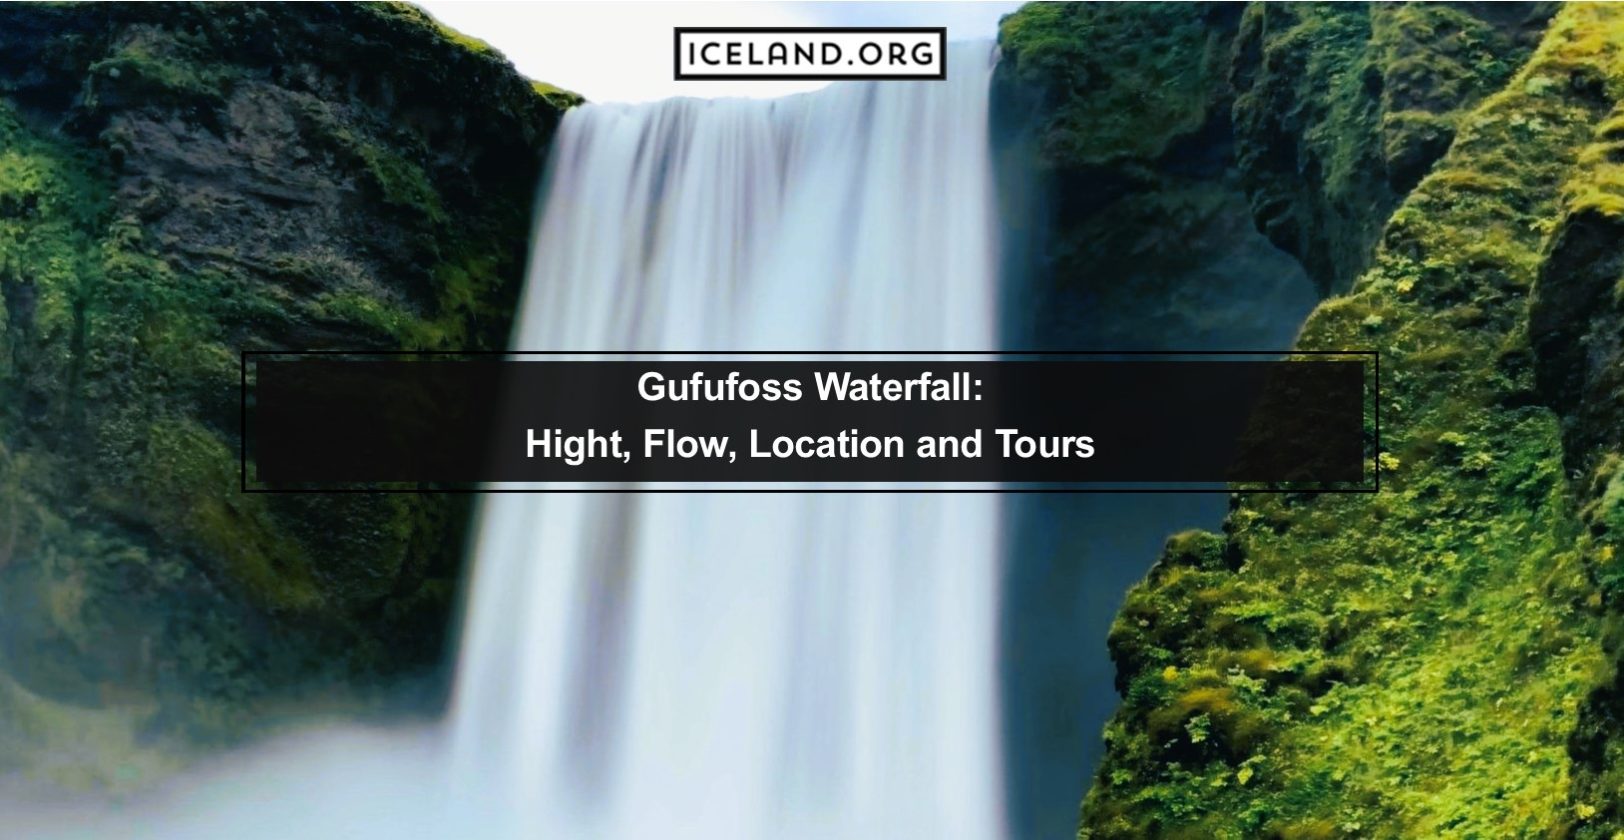 Gufufoss Waterfall in Iceland